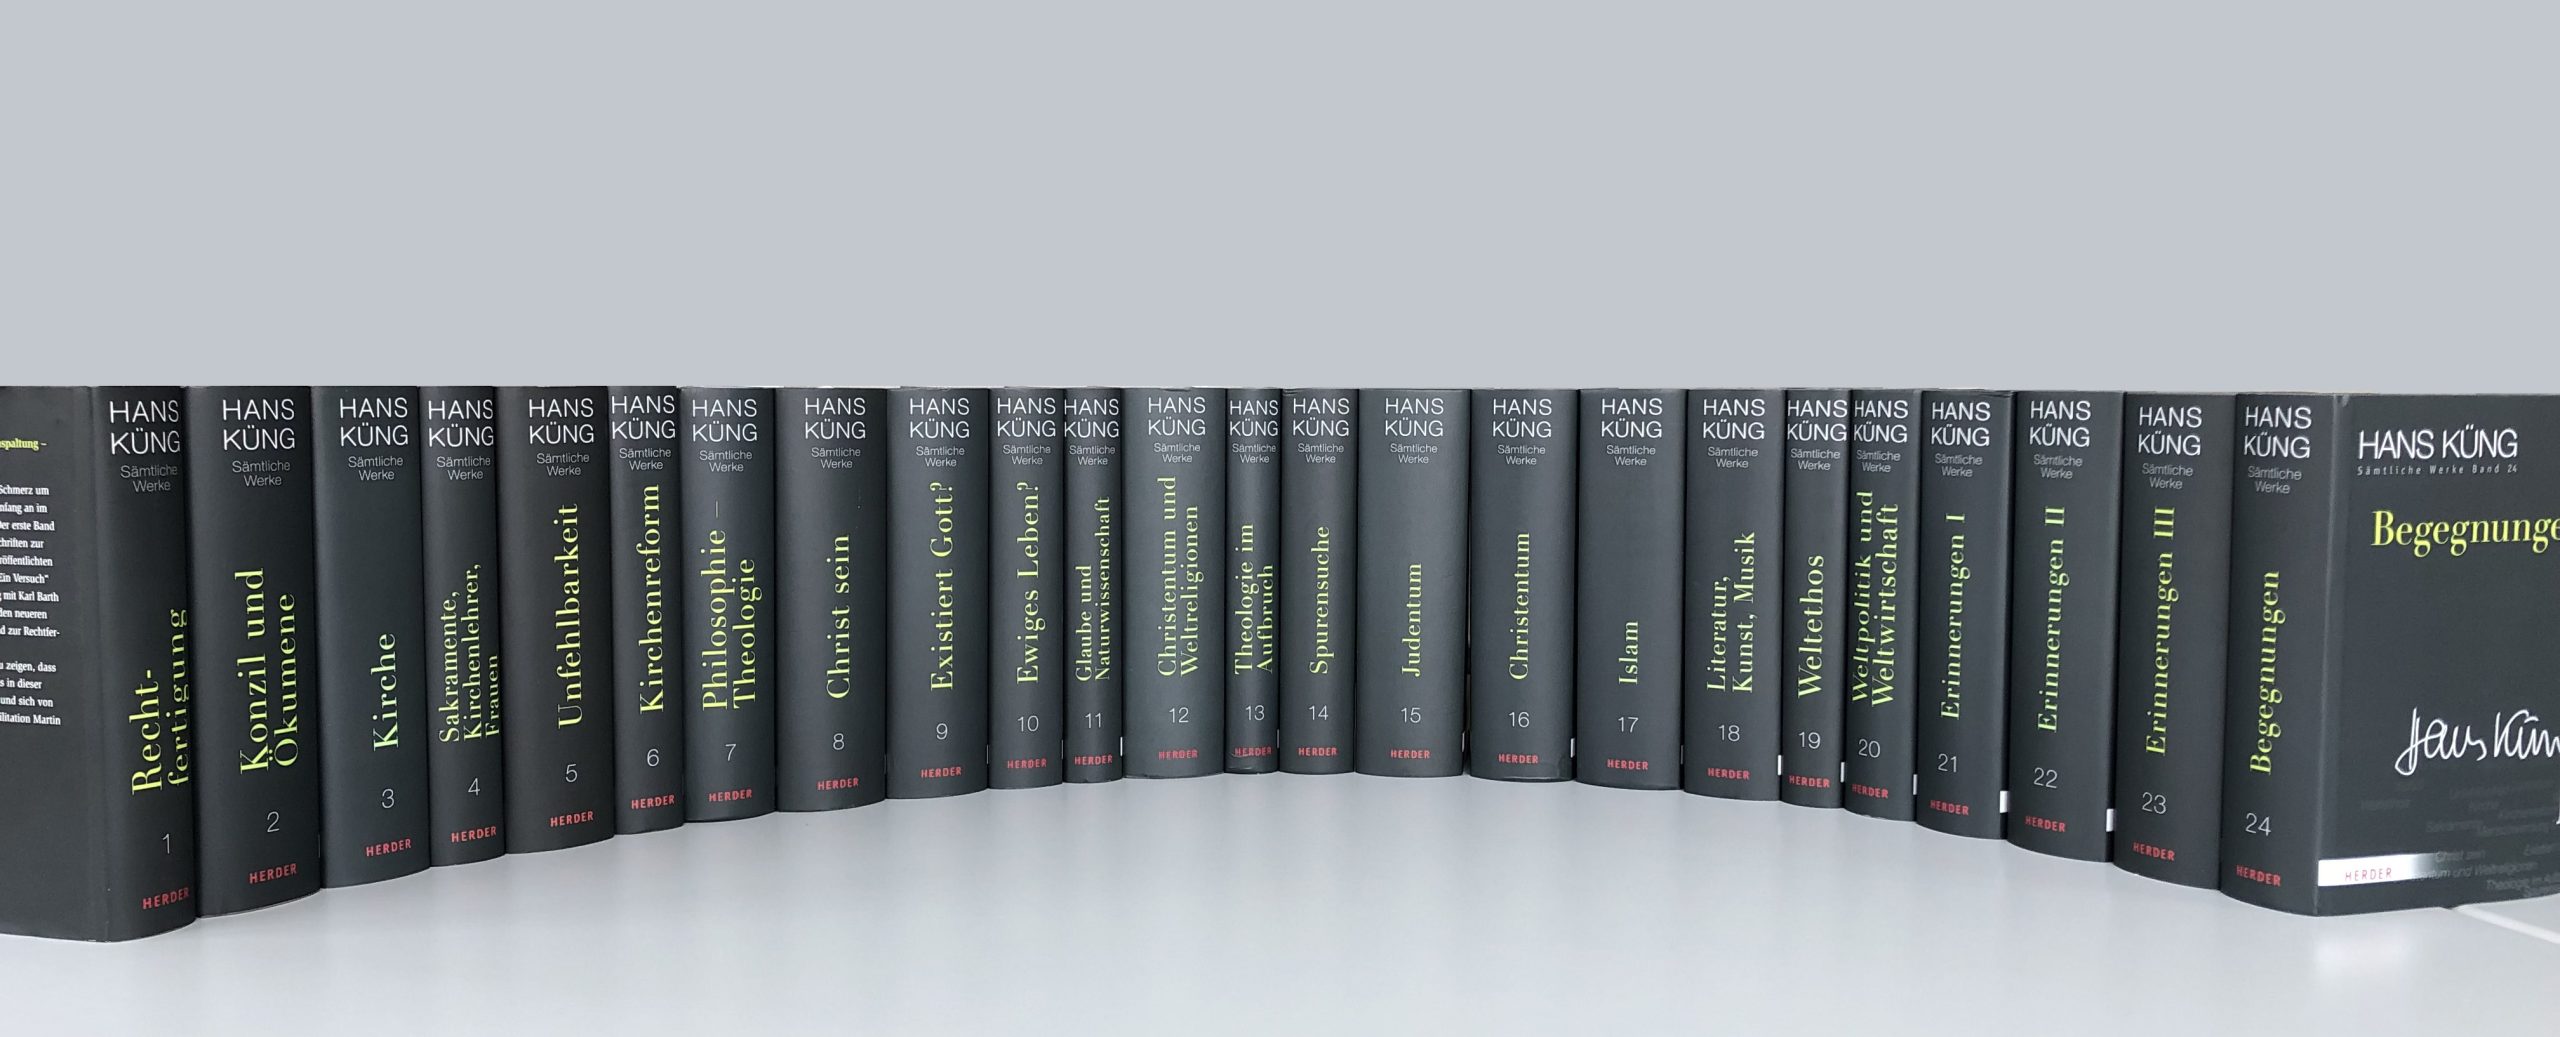 Das Bild zeigt 24 Bücher von Hans Küng im Halbkreis aufgestellt.